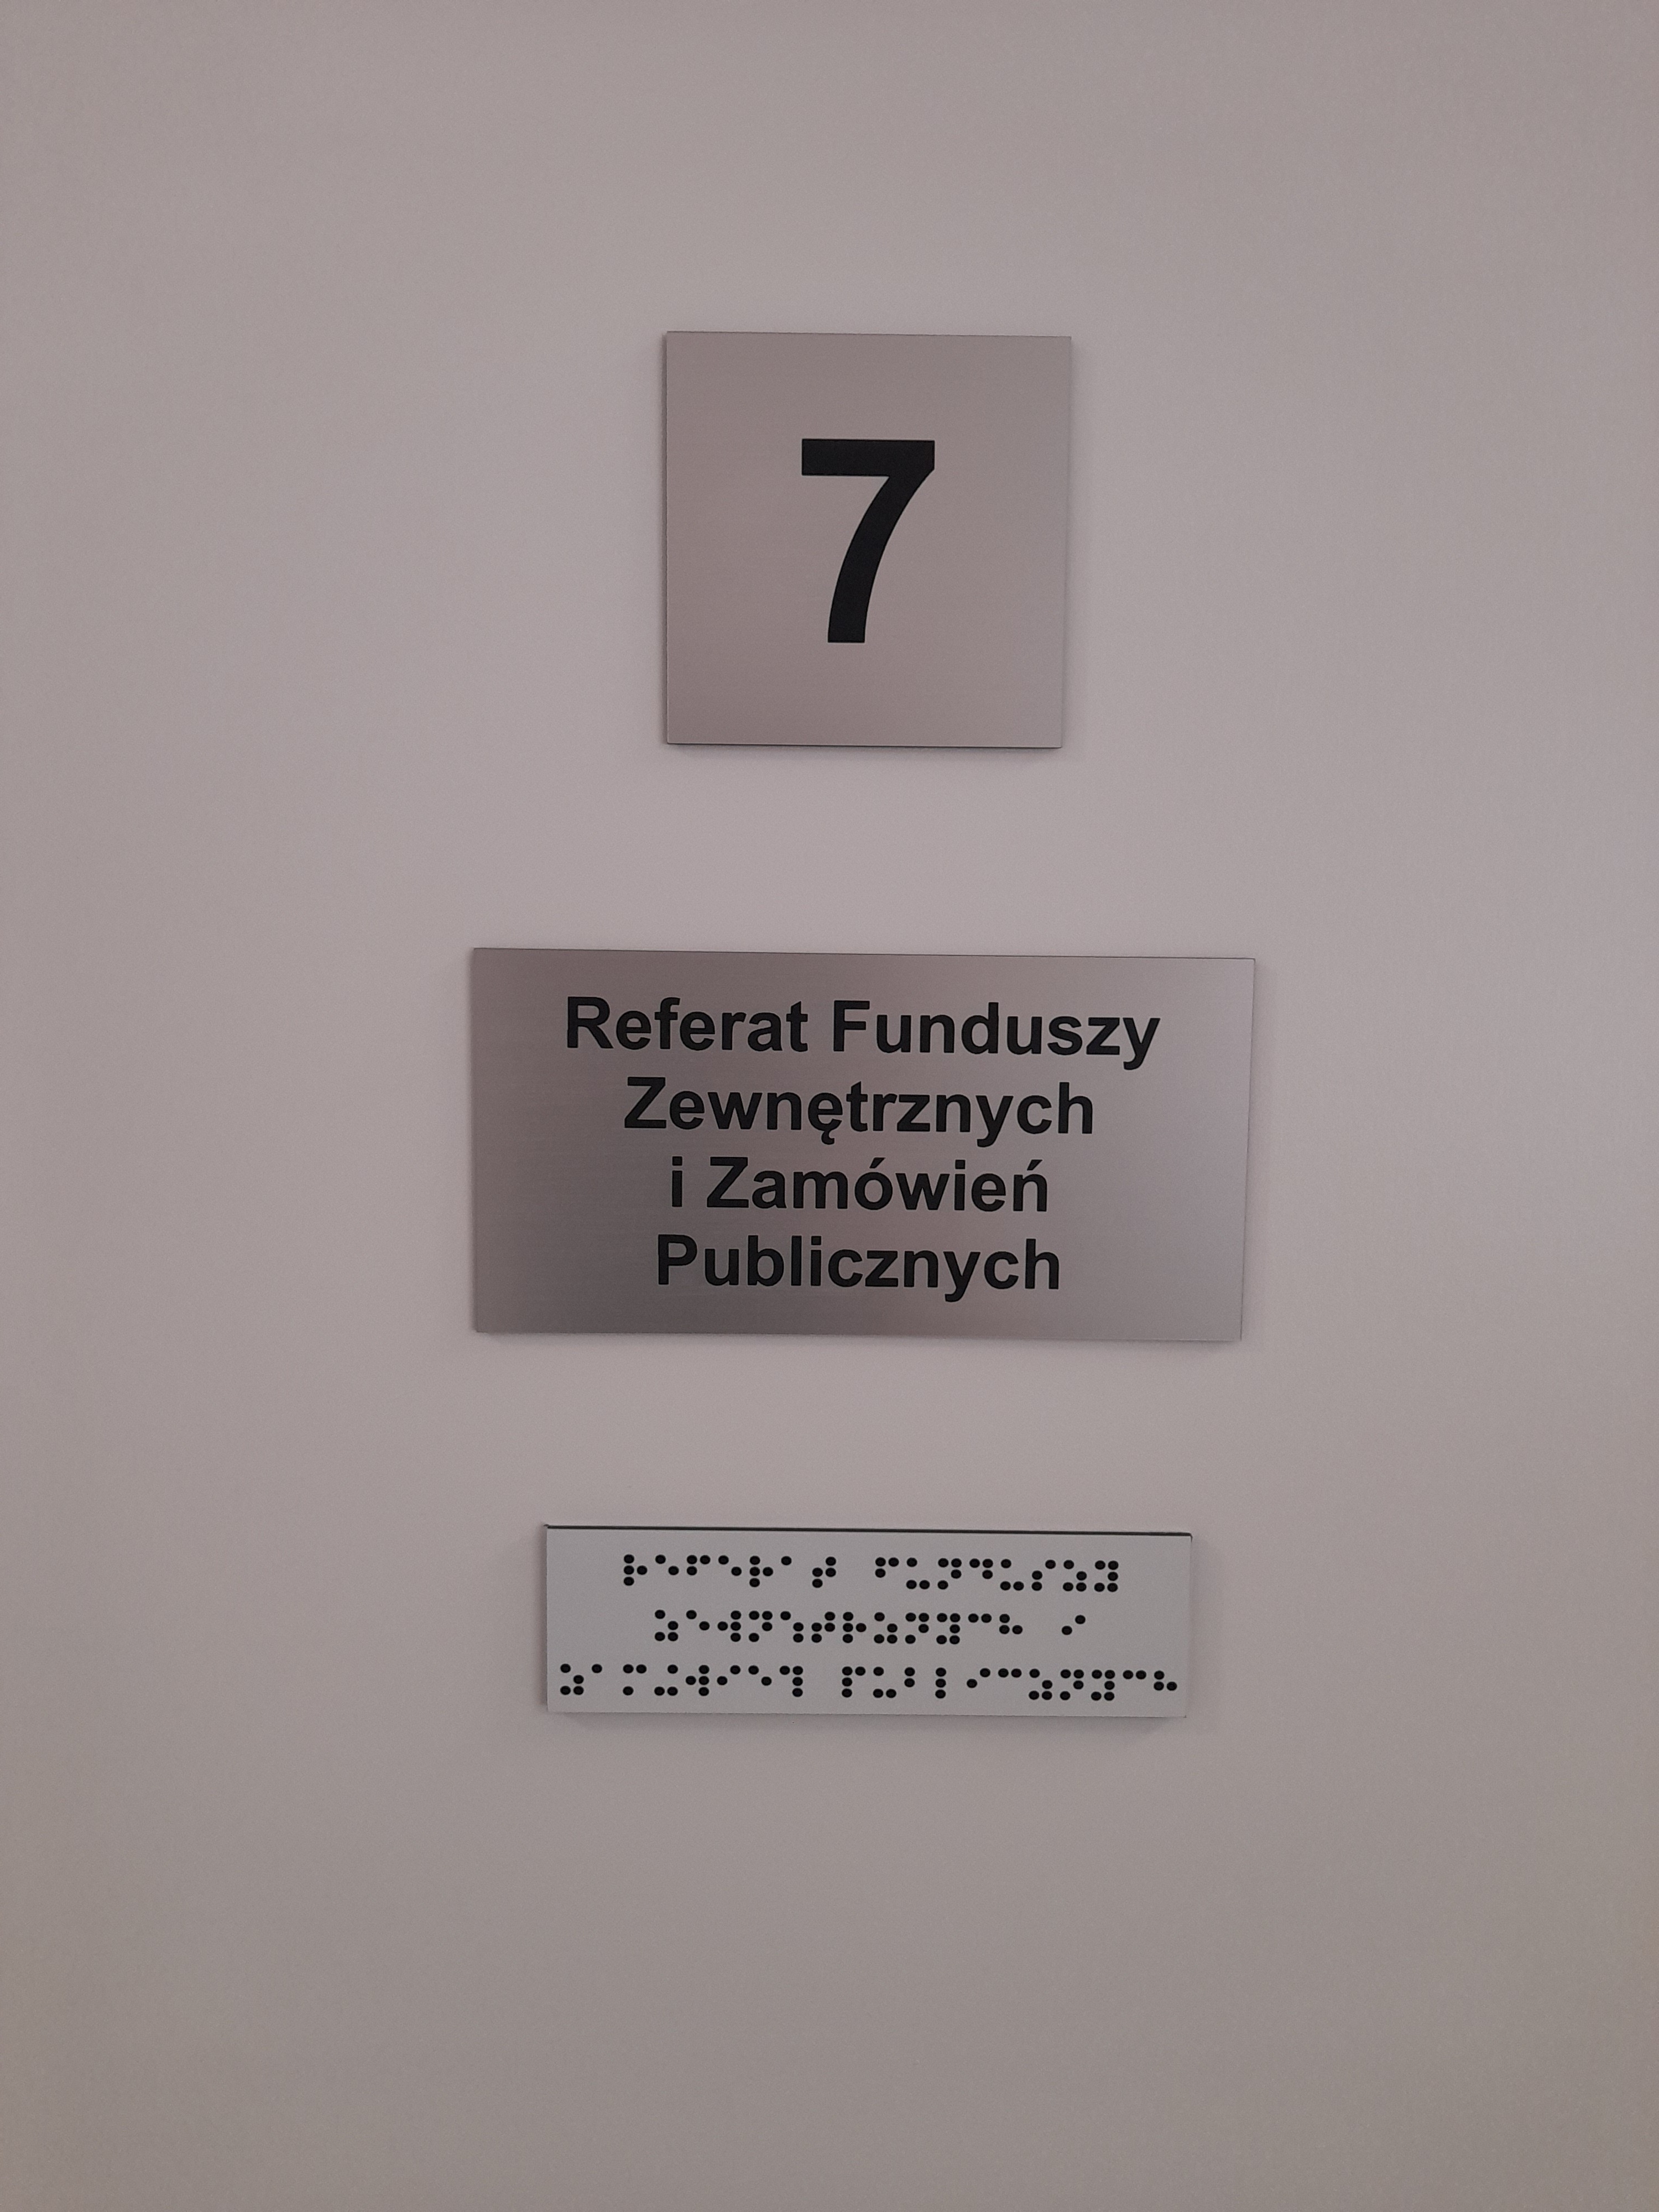 Oznaczenia w alfabecie braille'a w drugim budynku urzędu przy ul. 1 Maja 63